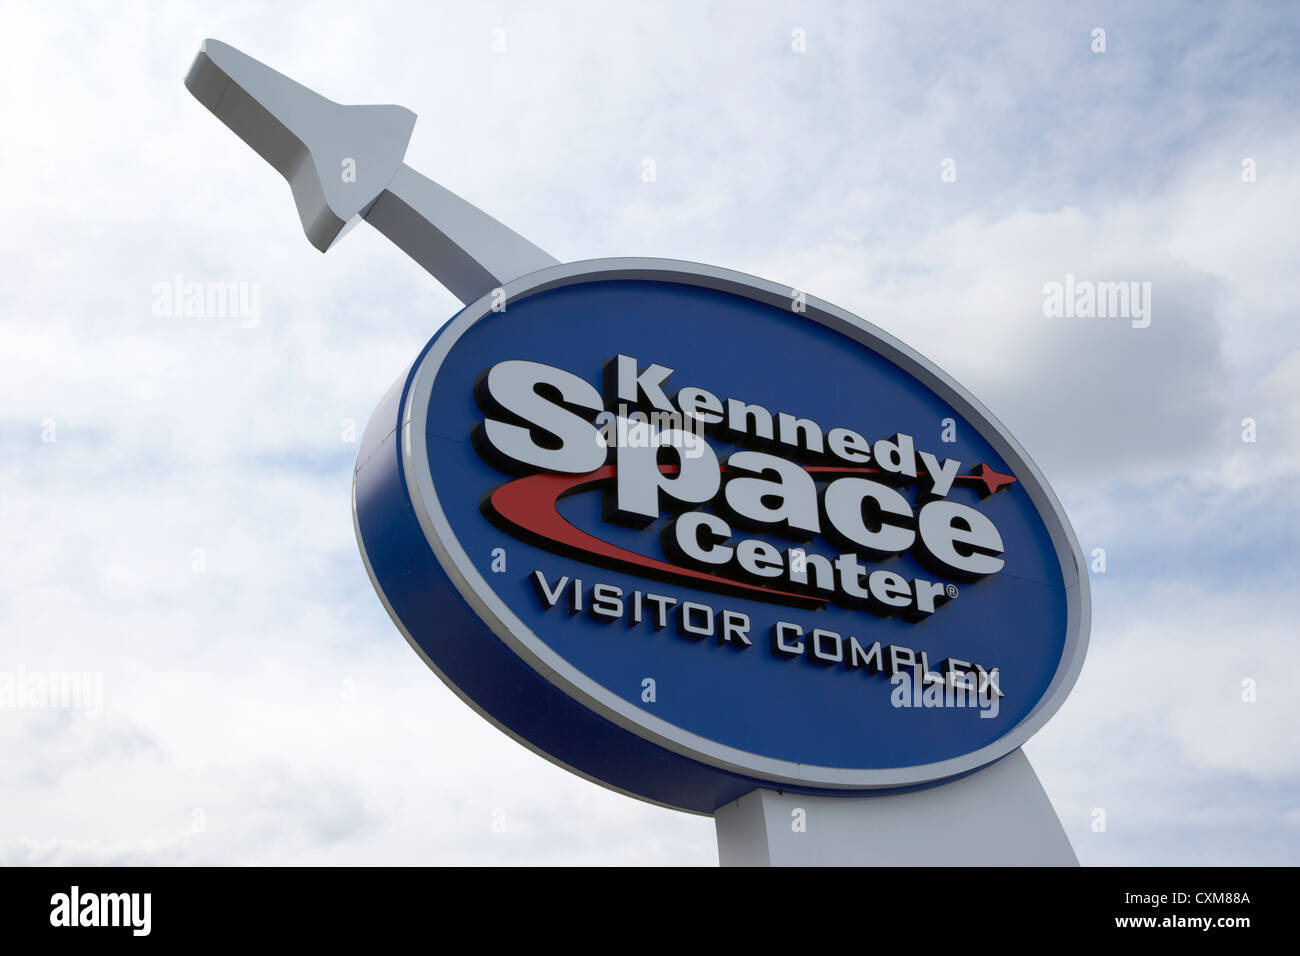 Melden Sie für Kennedy Space Center Visitor complex Florida USA Stockfoto